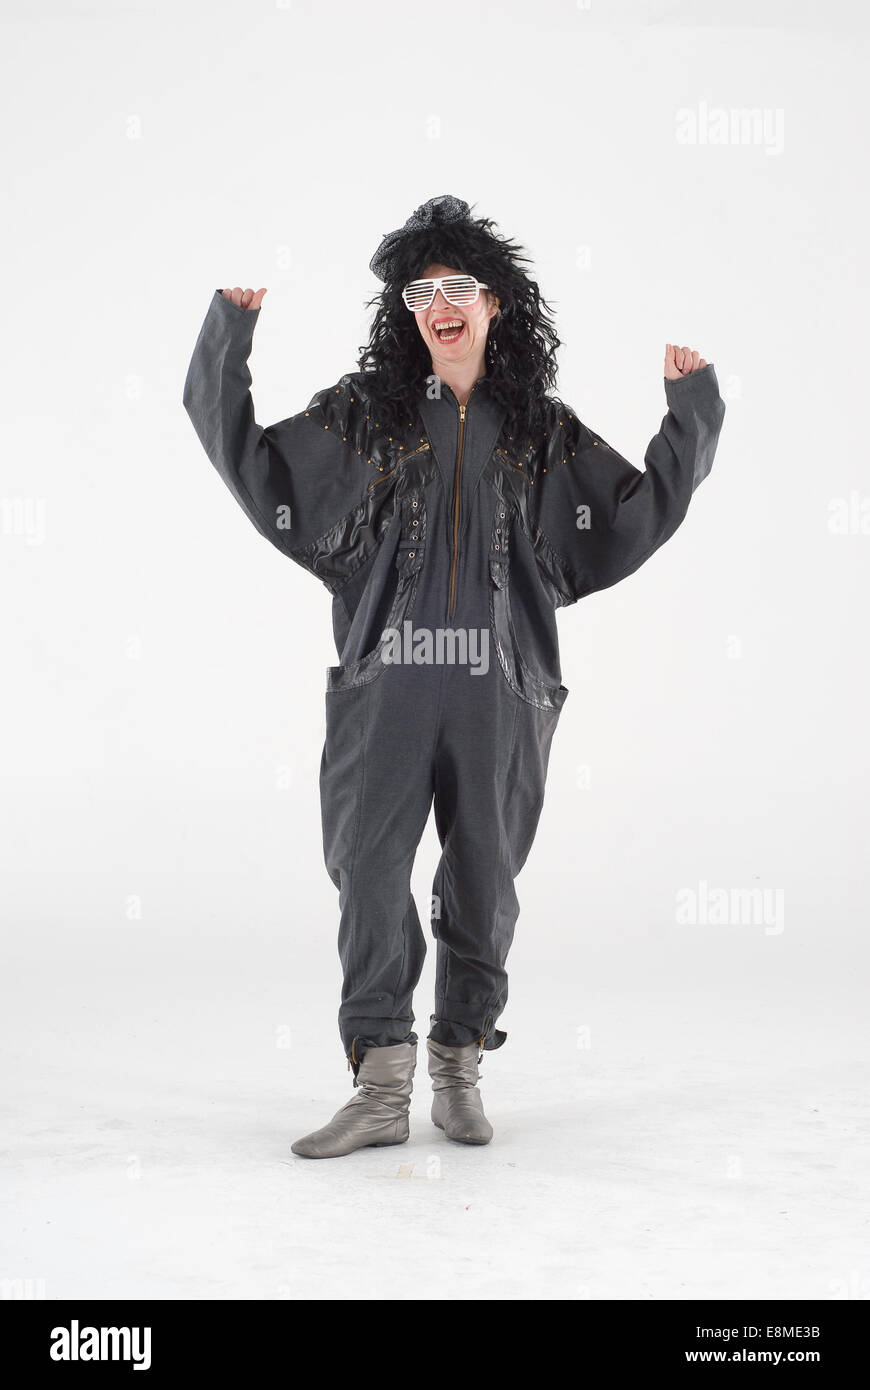 Donna in costume costume della commedia in uno degli anni ottanta, moda vestito con larghi nero tutina, grande parrucca, argento stivali & white glas Foto Stock